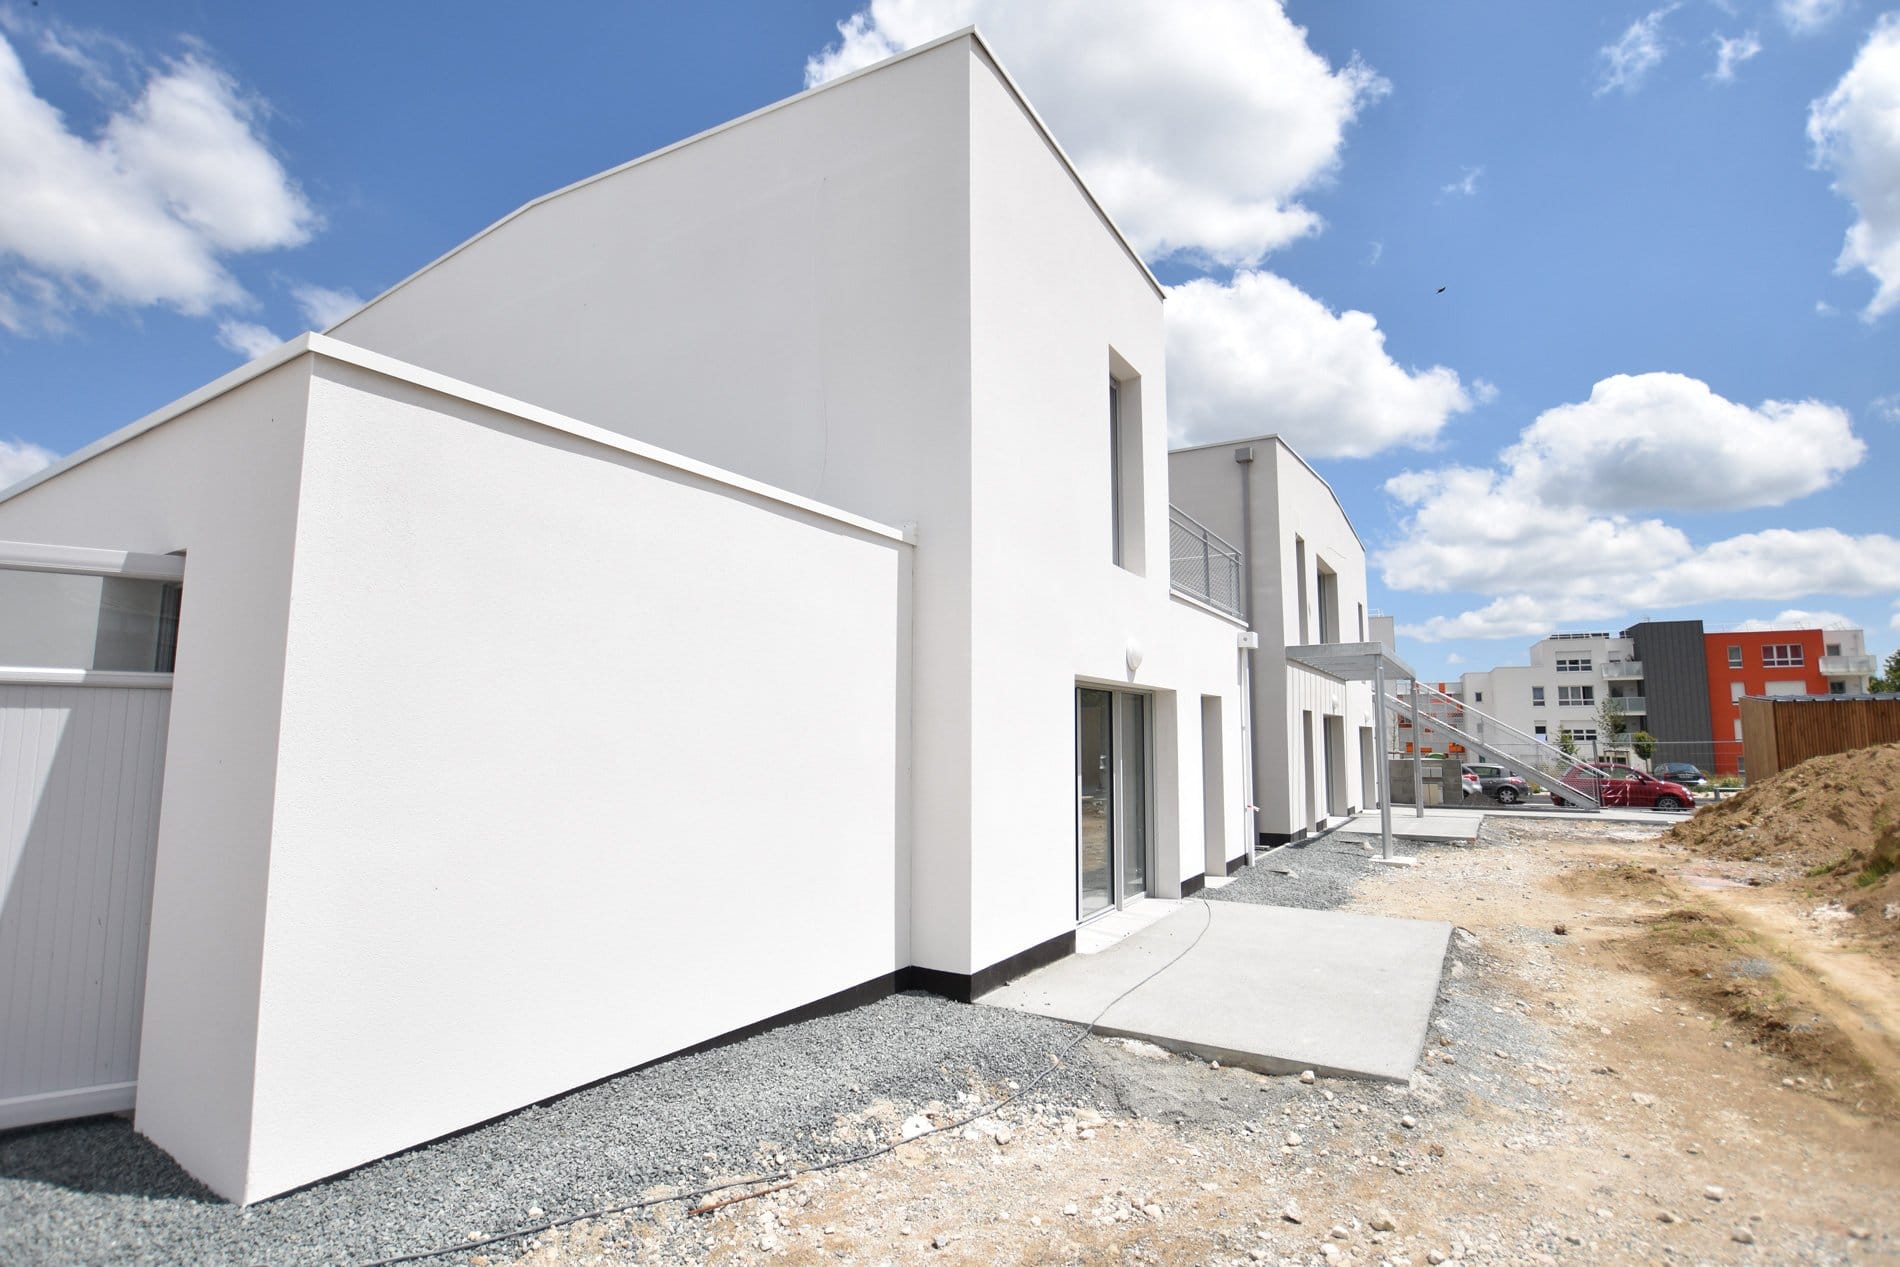 Vendée Habitat - construction de logements en Vendée premier trimestre 2021